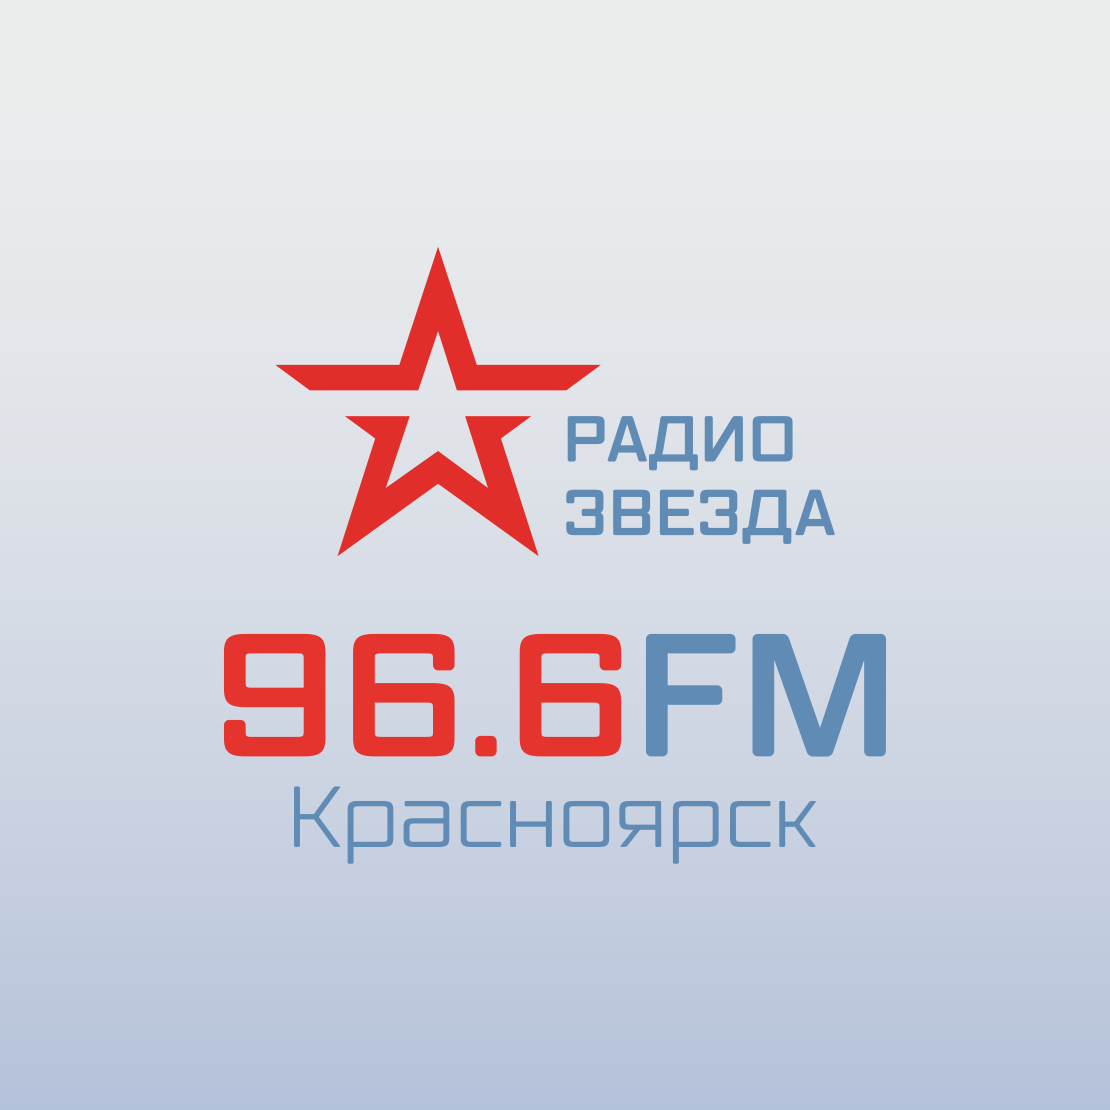 Звезда 1 прямой эфир. Радио звезда. Радио звезда радиостанция. Логотип радиостанции звезда. Радиоканал звезда.